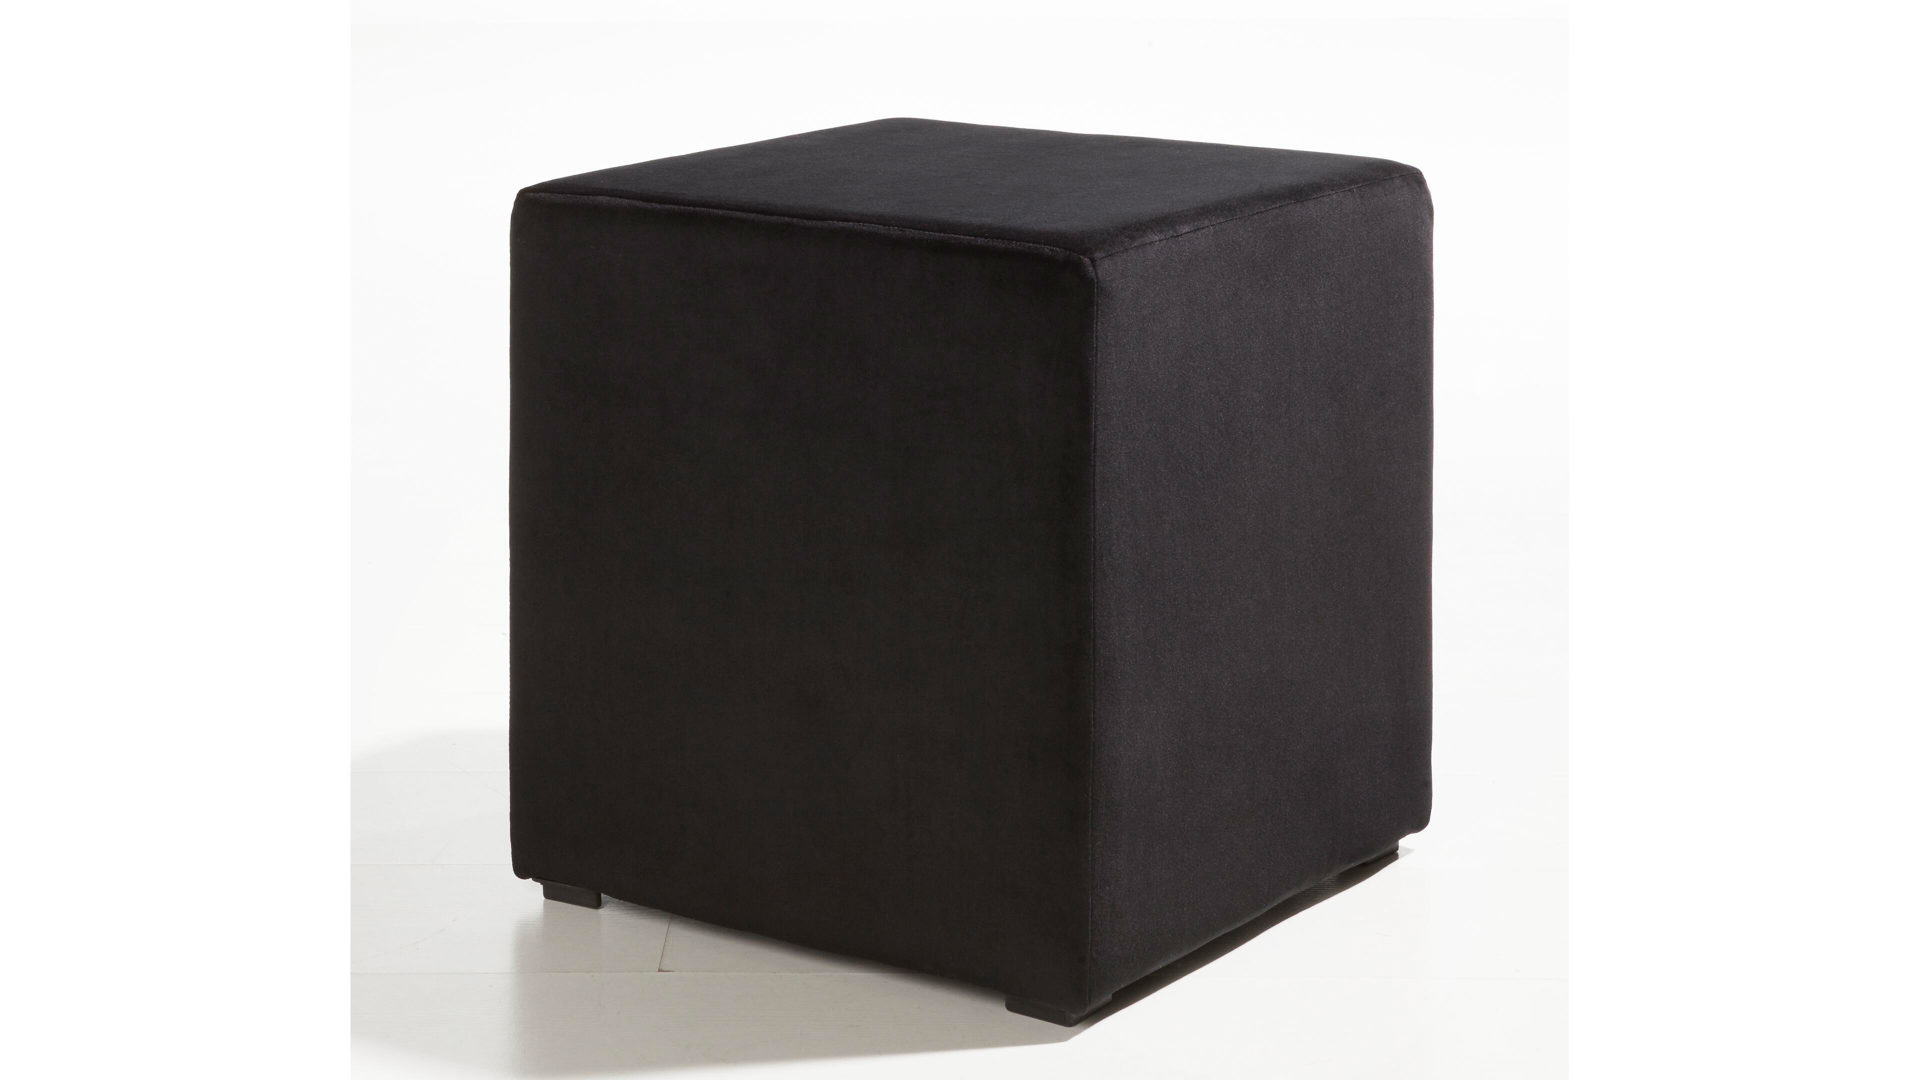 Polsterhocker KAWOO aus Stoff in Schwarz quadratischer KAWOO Polsterhocker Torino - Sitzmöbel schwarzer Mikrovelours Matrix 18 - ca. 40 x 40 cm